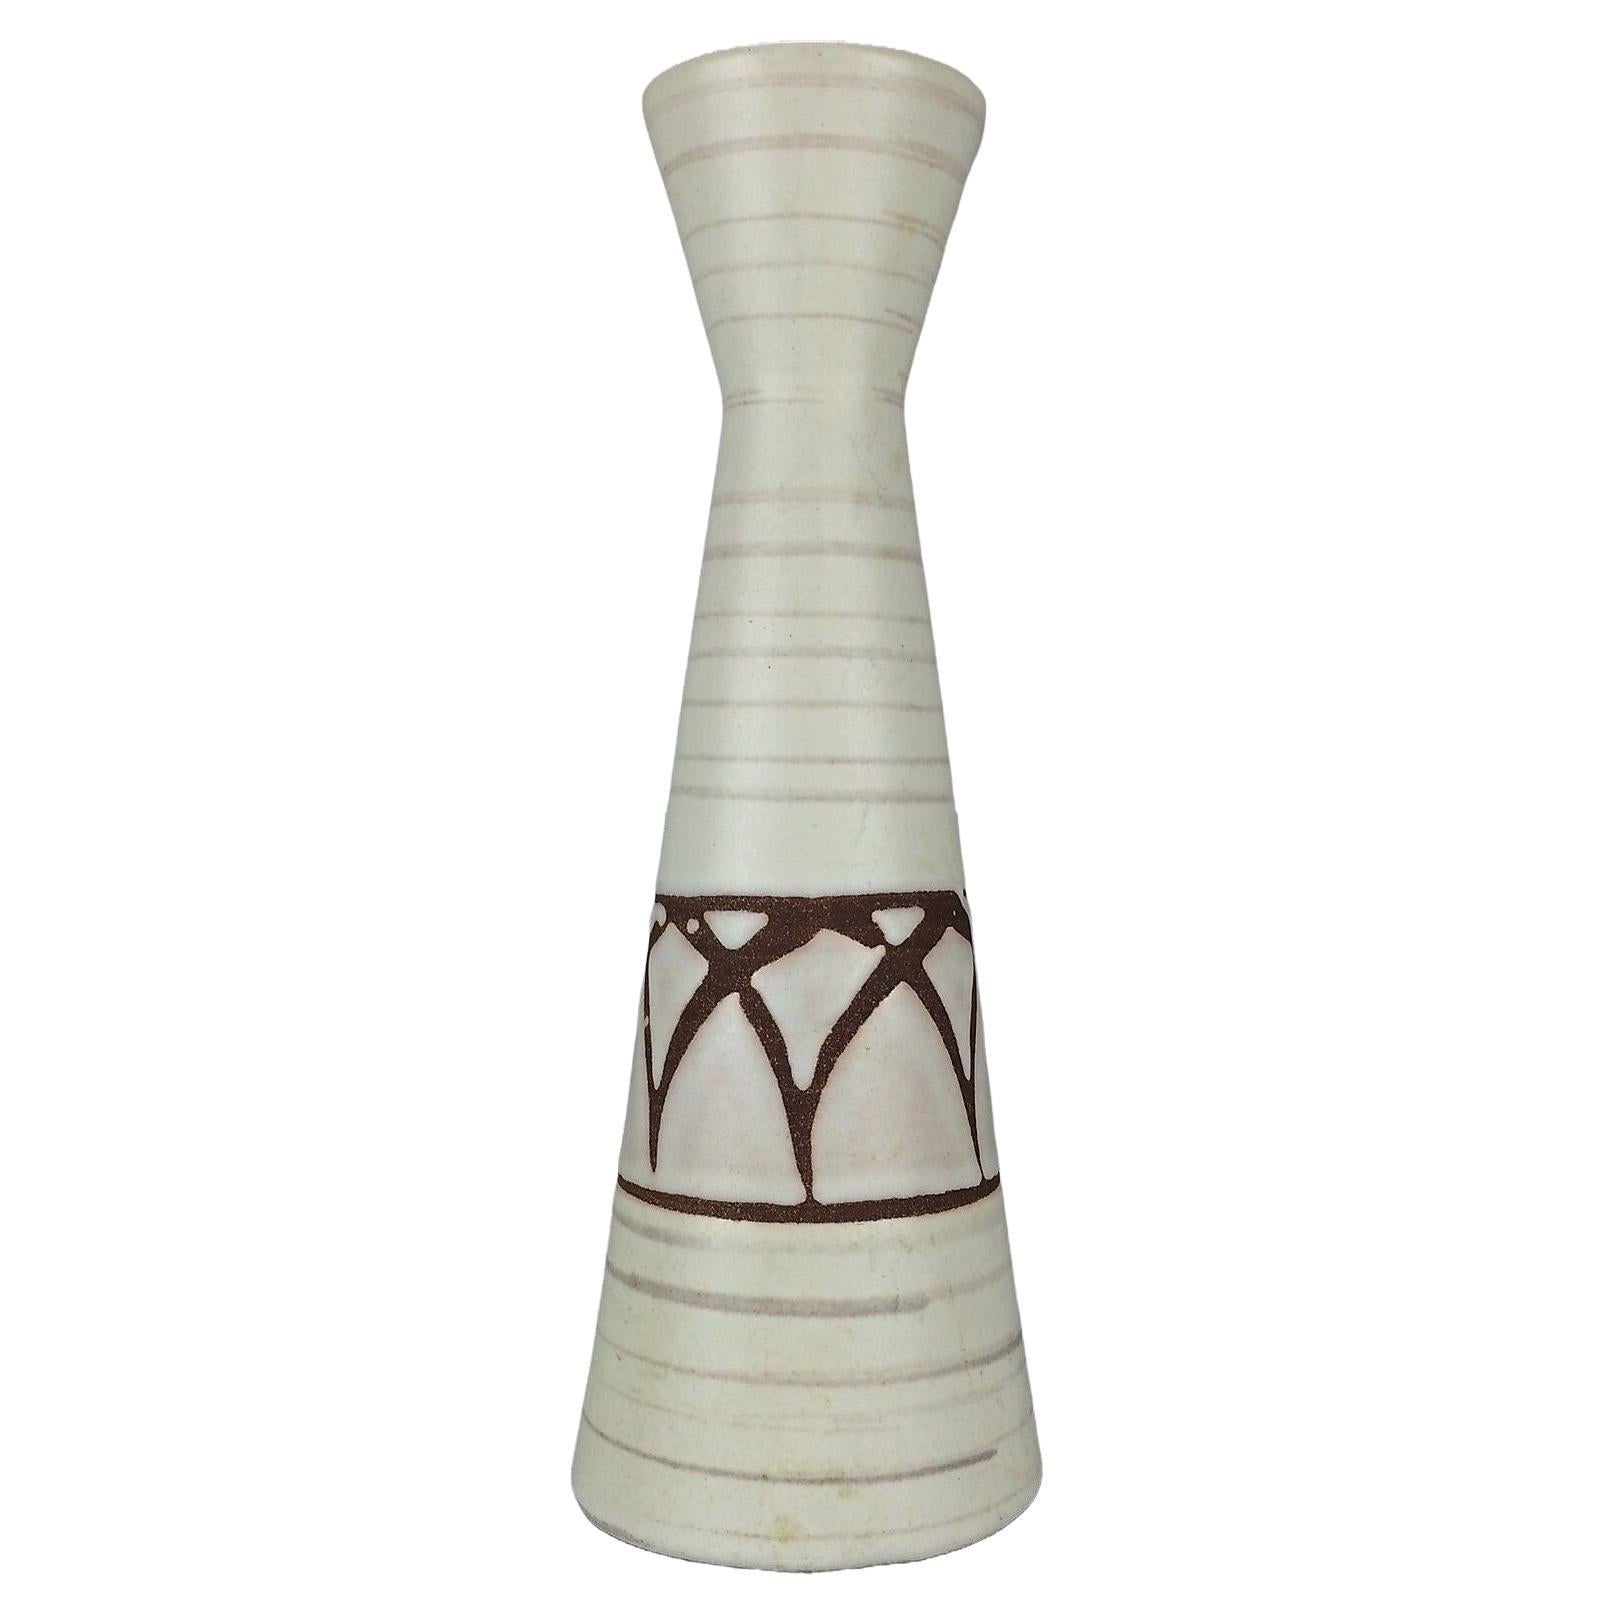 60s 70s Vase Table Vase Flower Vase Ceramic Vase Ceramic Space Age Design